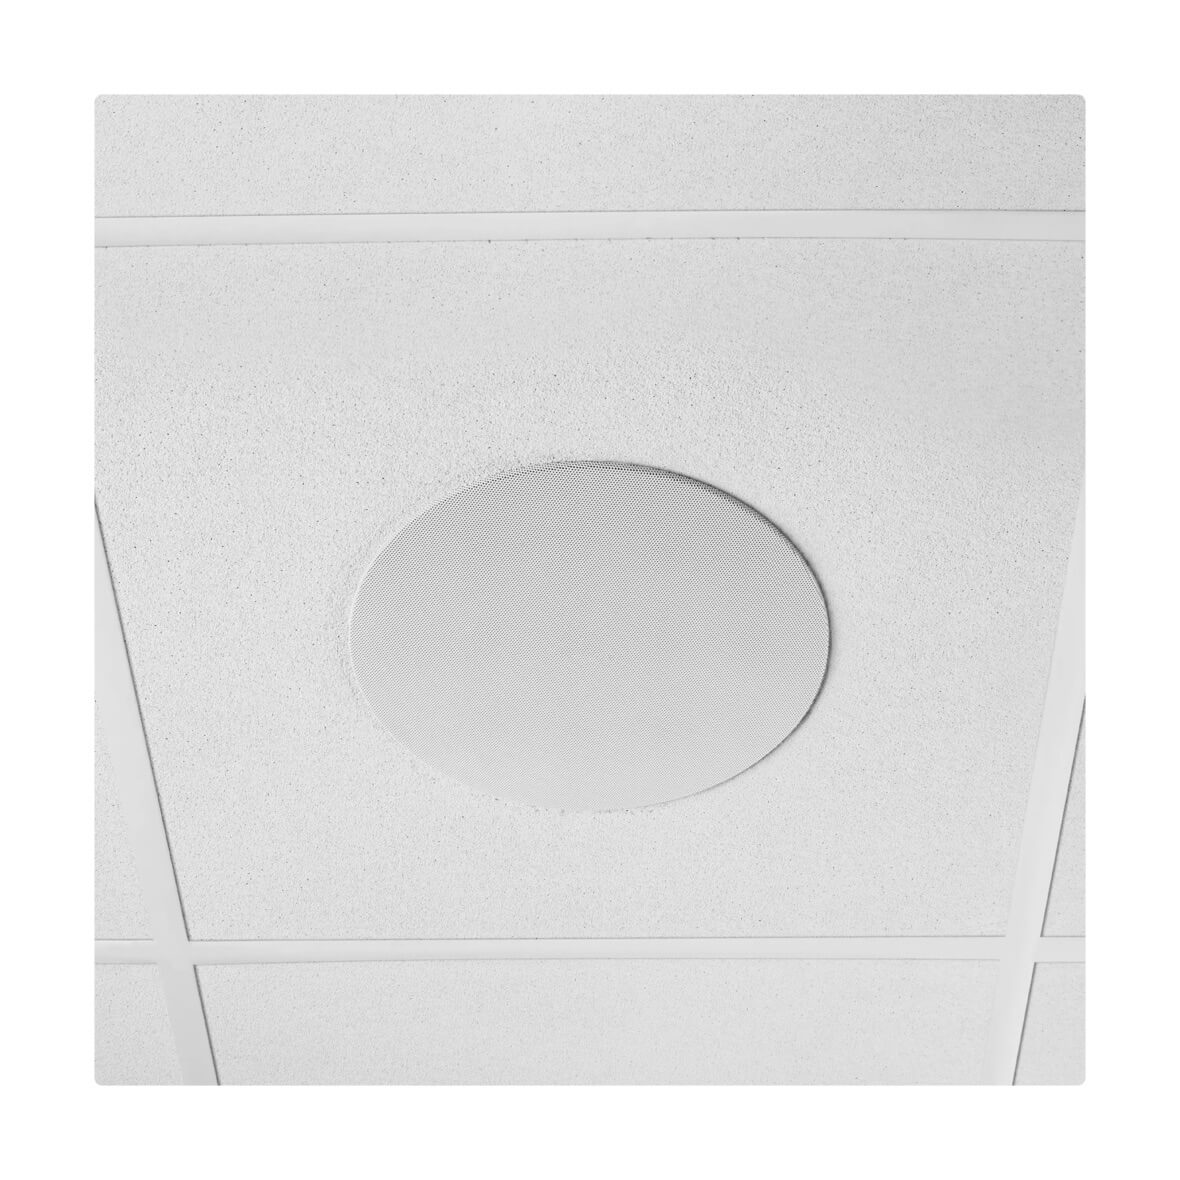 Shure MXN5W-C - Microflex Networked Ceiling Loudspeaker, drop ceiling mount